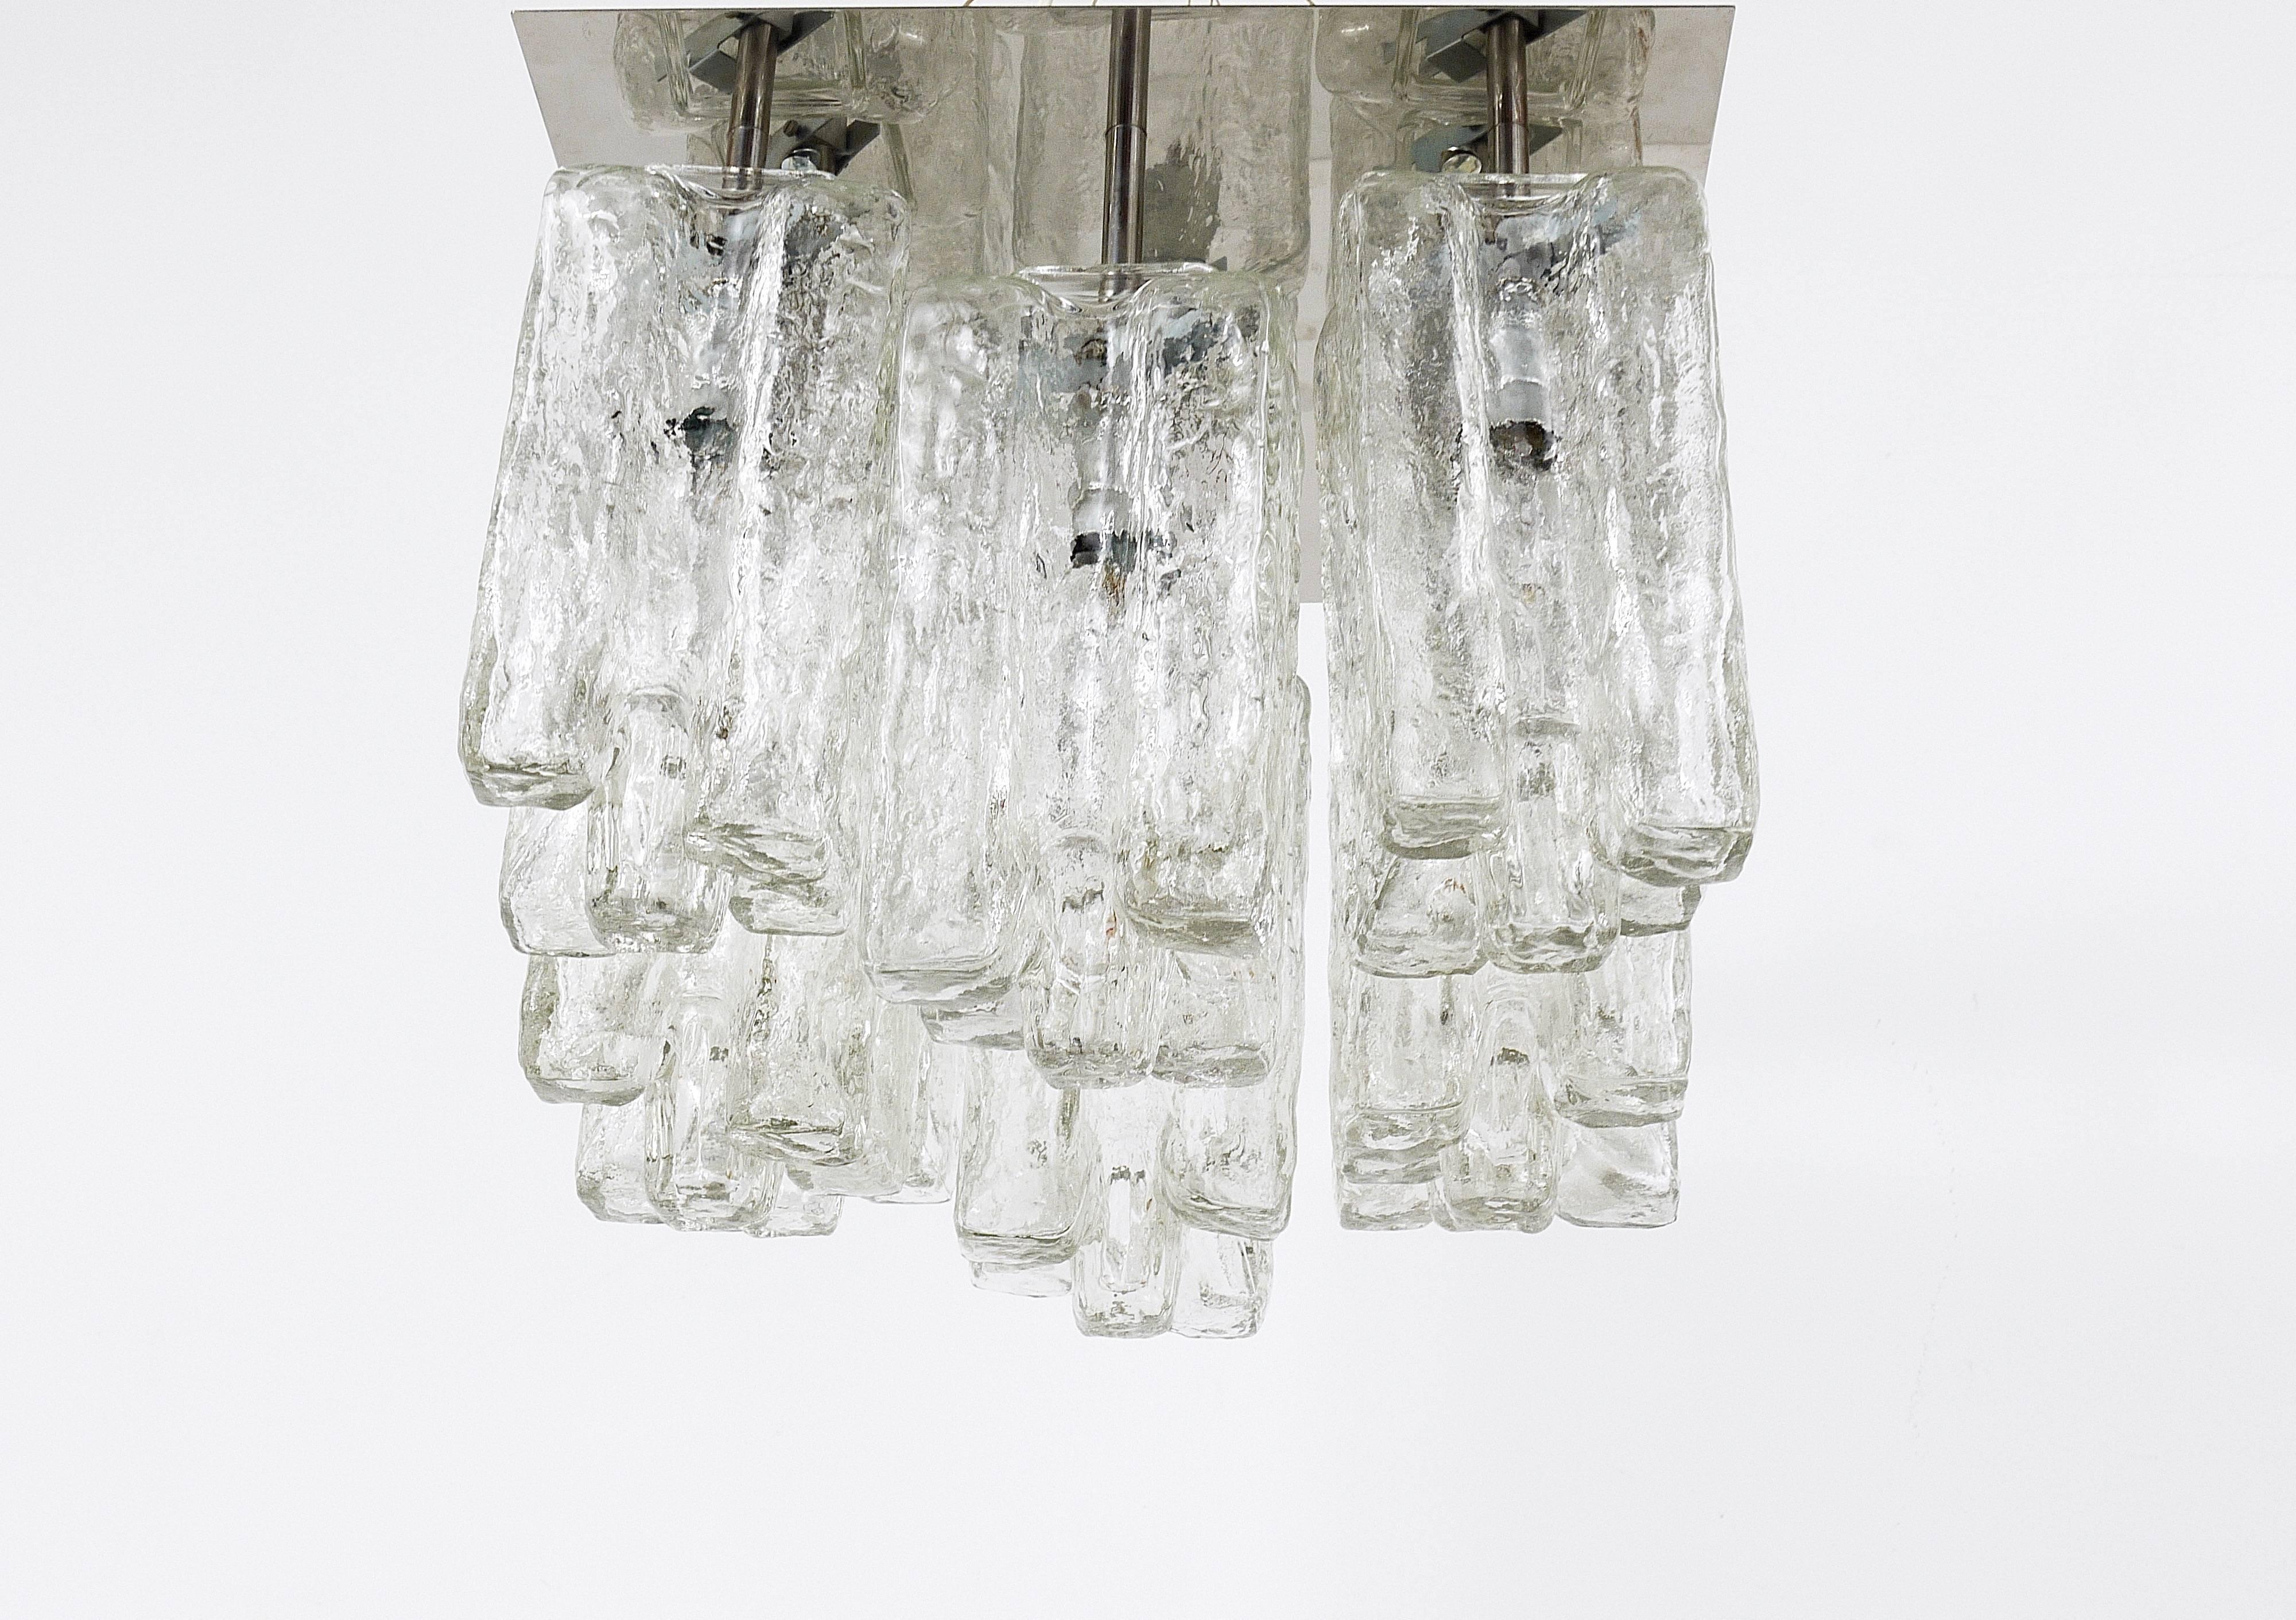 Kalmar Granada Eisglas-Kronleuchter mit Einbaubeleuchtung, Österreich, 1960er Jahre (Mattiert)